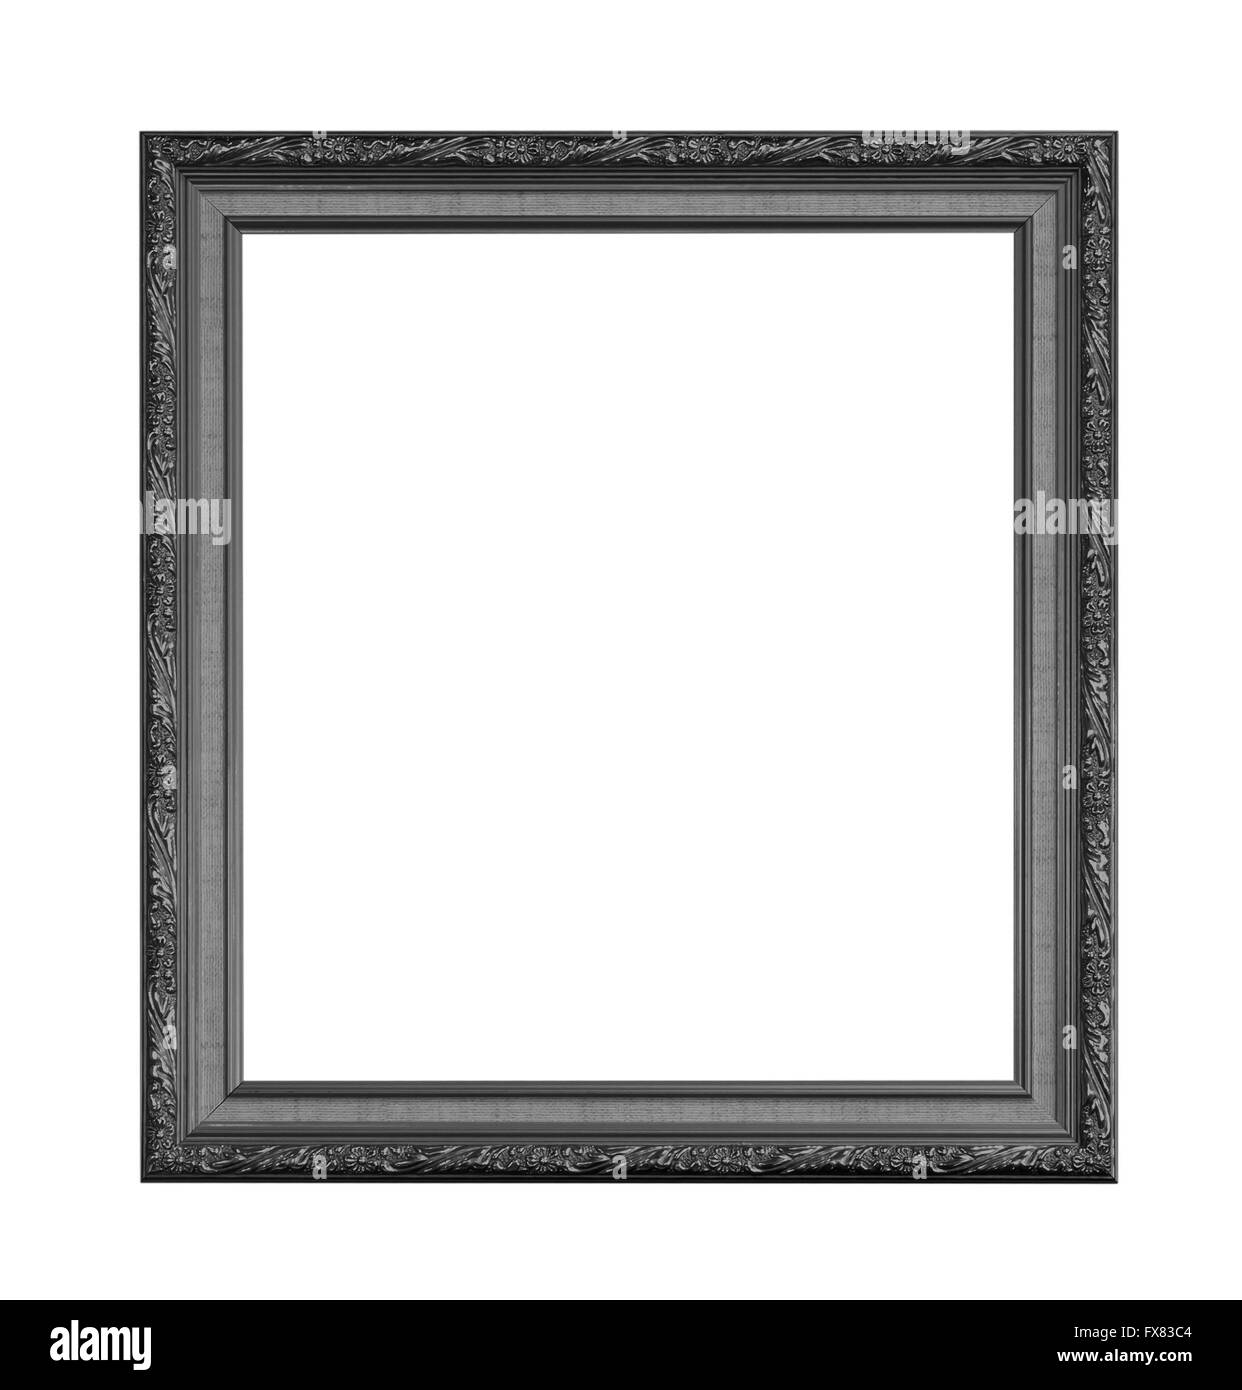 Cadre photo noir isolé sur un fond blanc. Banque D'Images